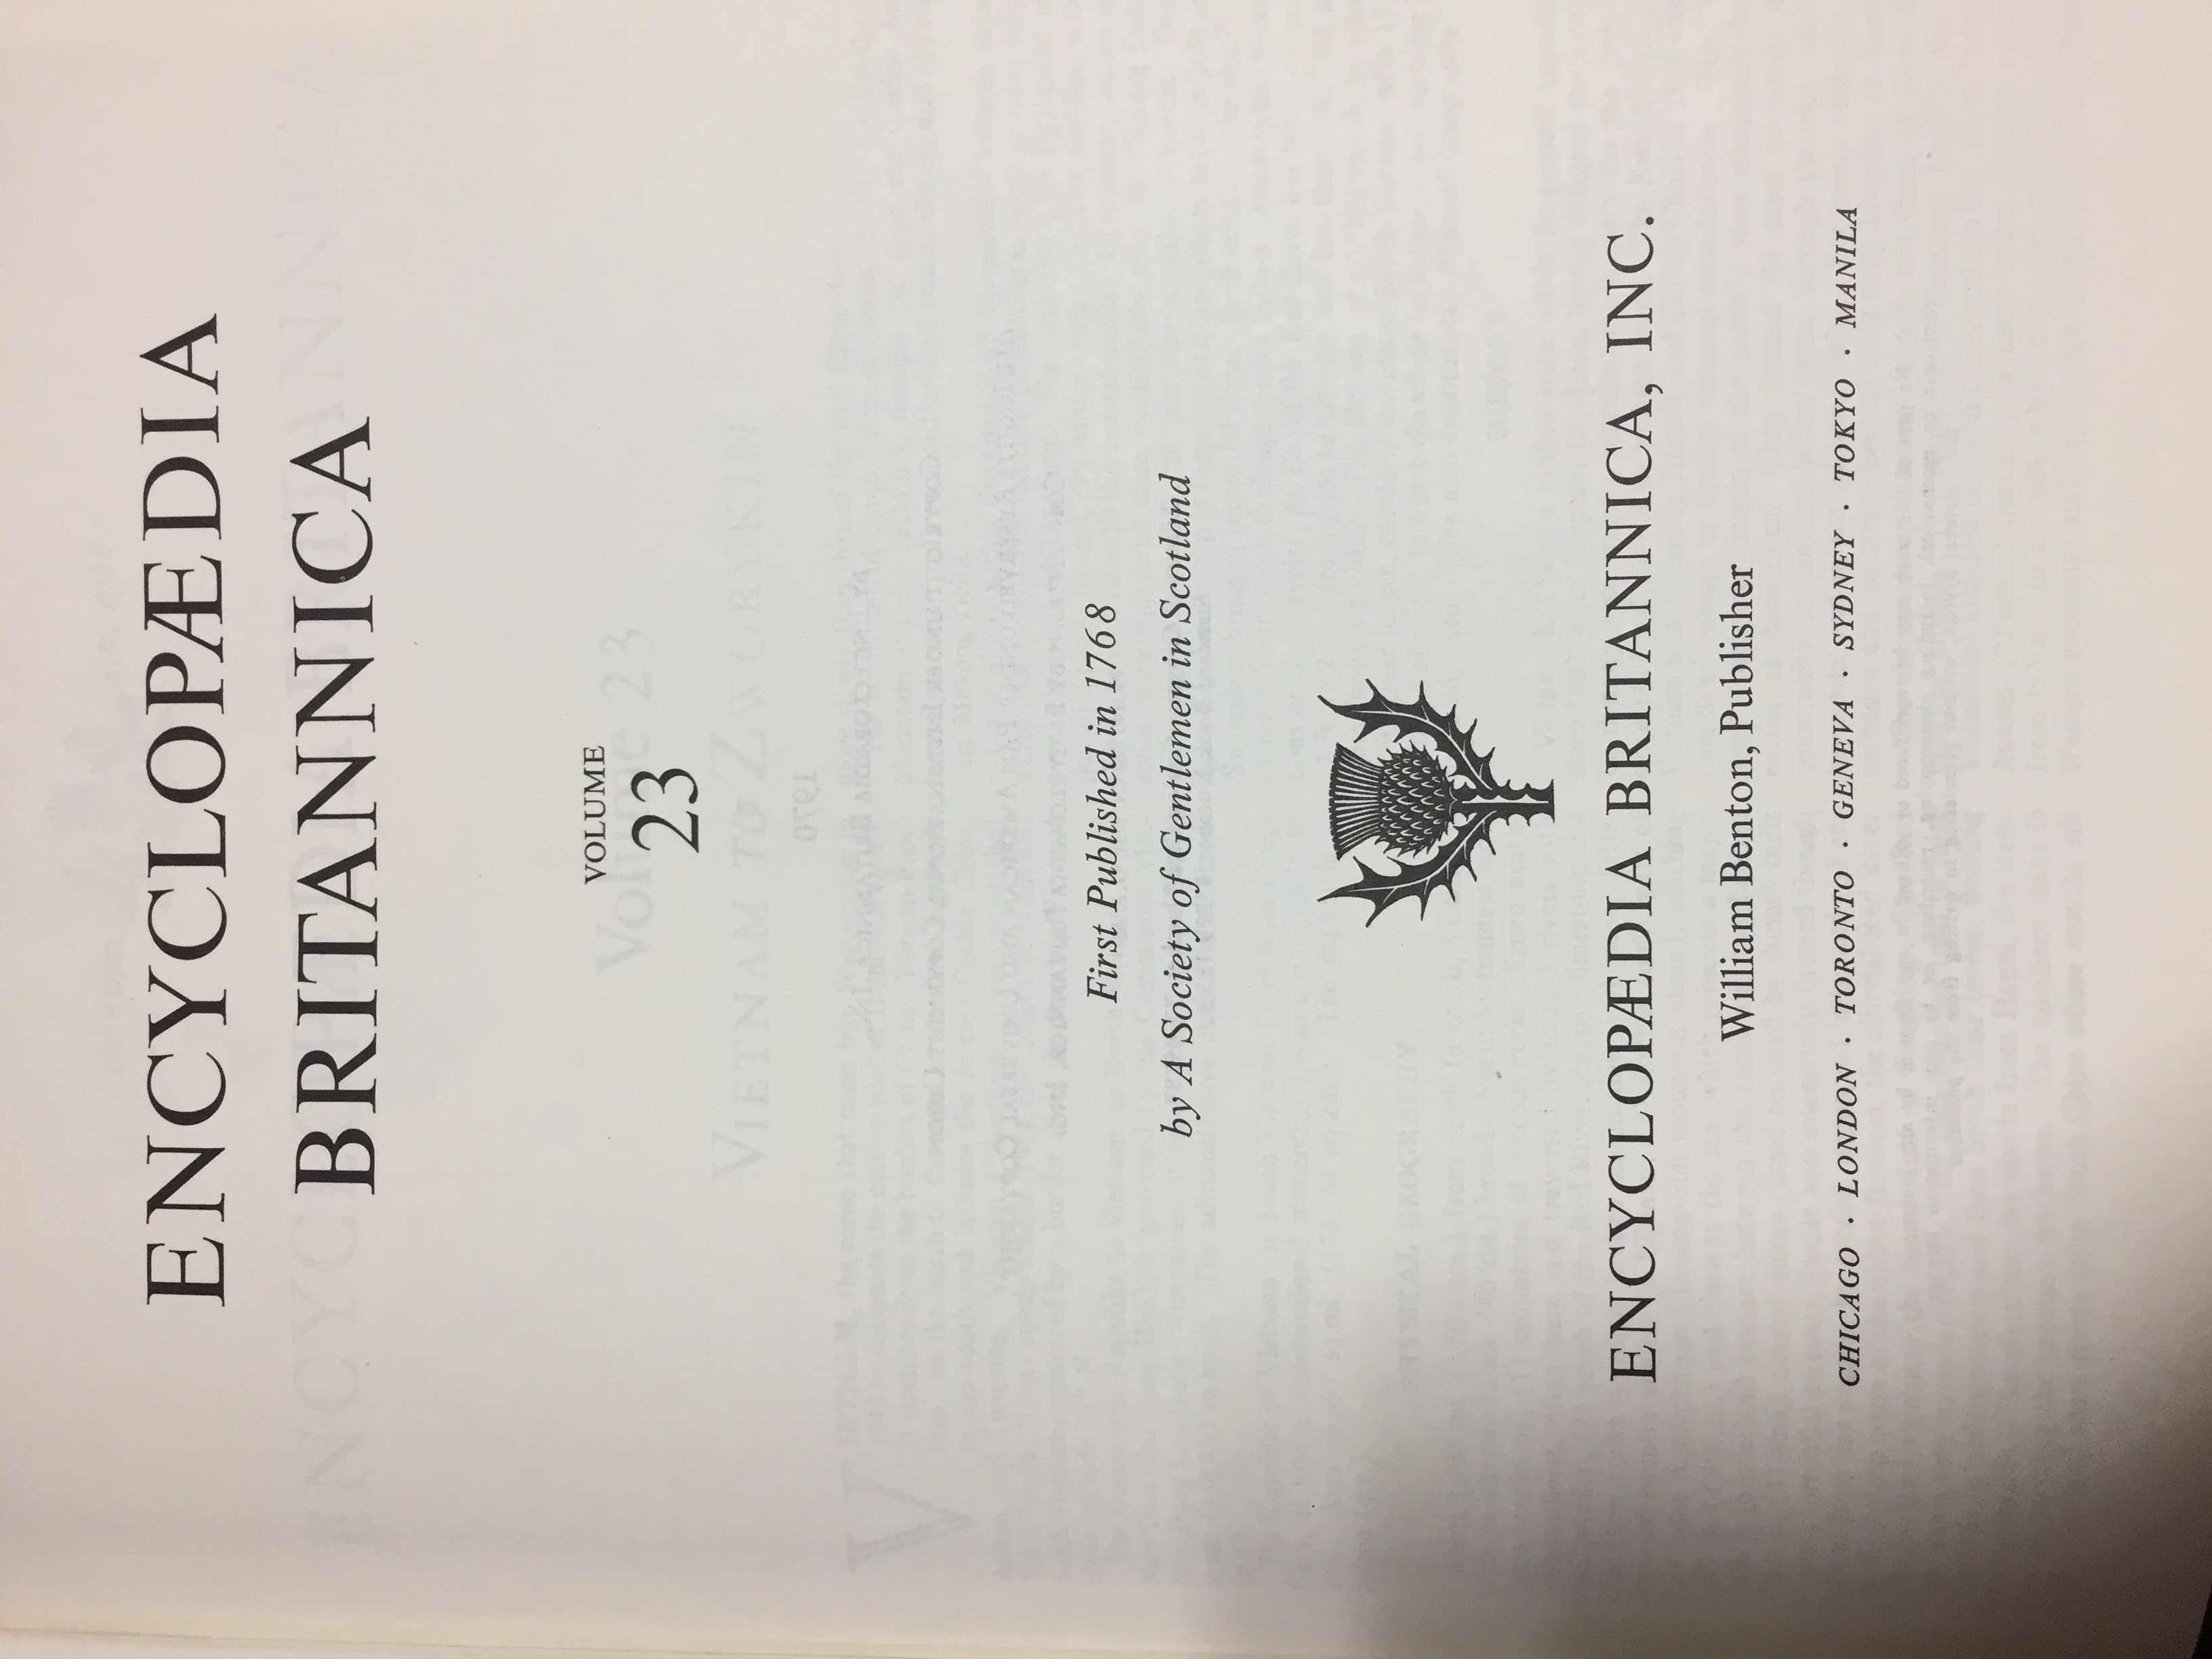 Encyclopedia Britannica 1970 1-23권, 1971, 1972, 1973, 1974